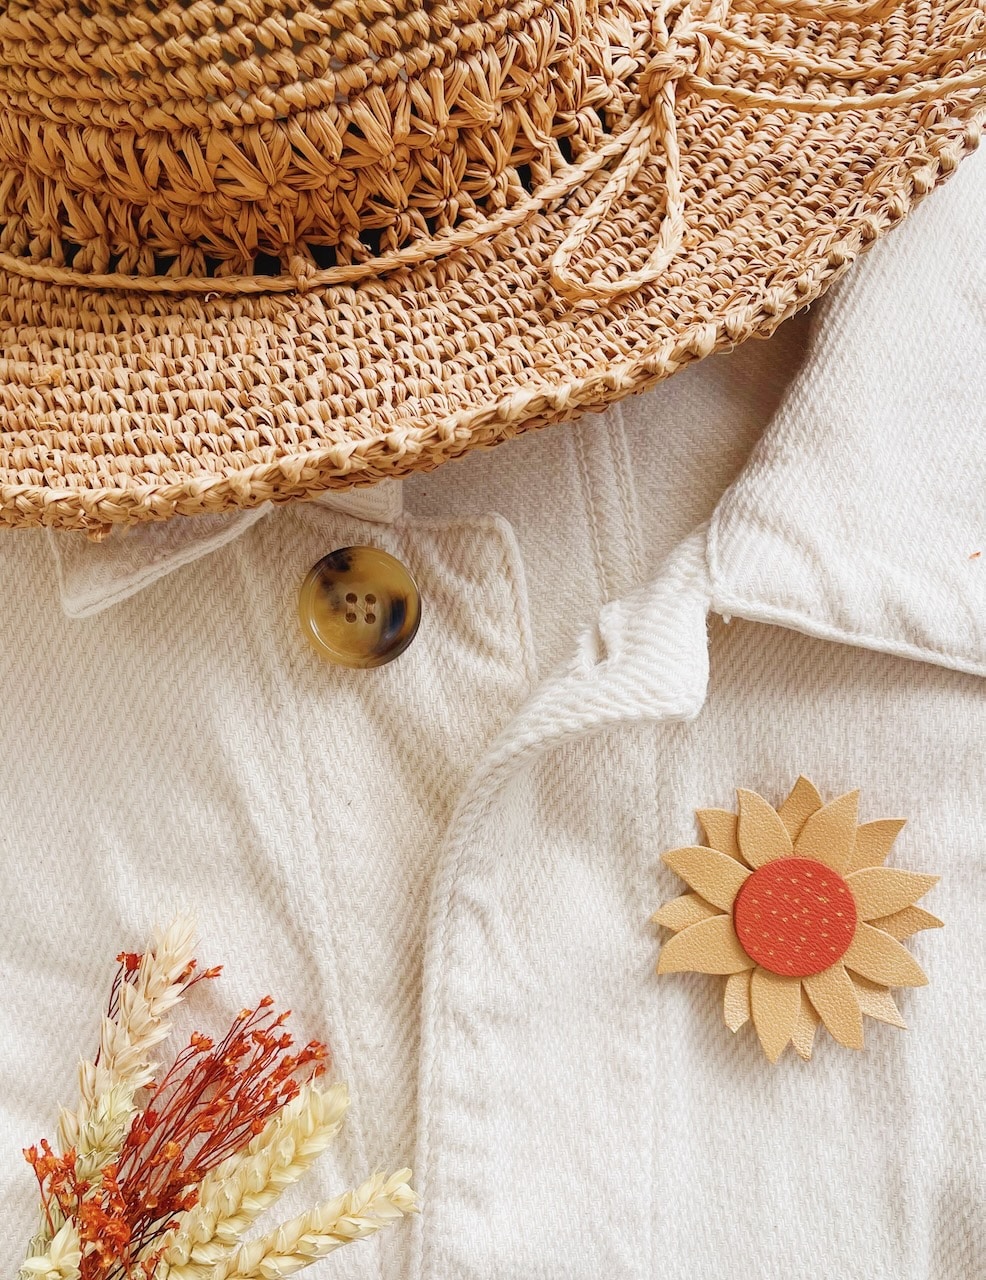 jolie broche tournesol fleur de soleil, une touche bohème chic et champêtre pour les robes et tenues d'été ©duventdansmesvalises 4